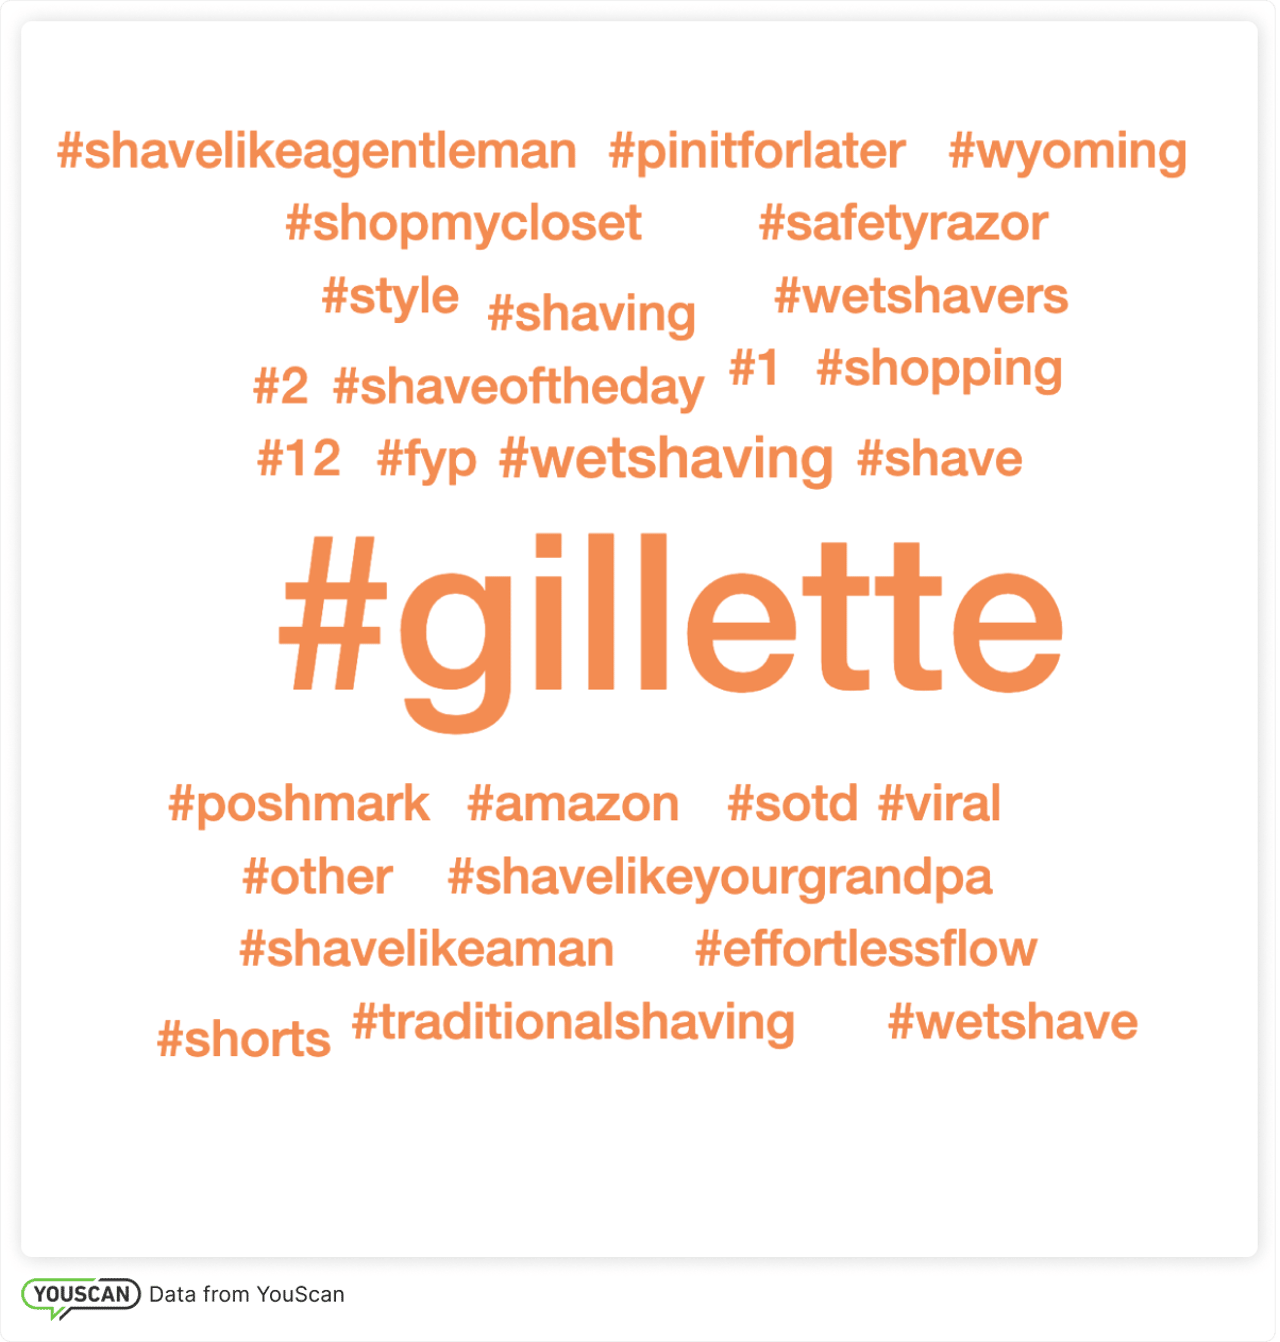 Gillette hashtag Word Cloud 